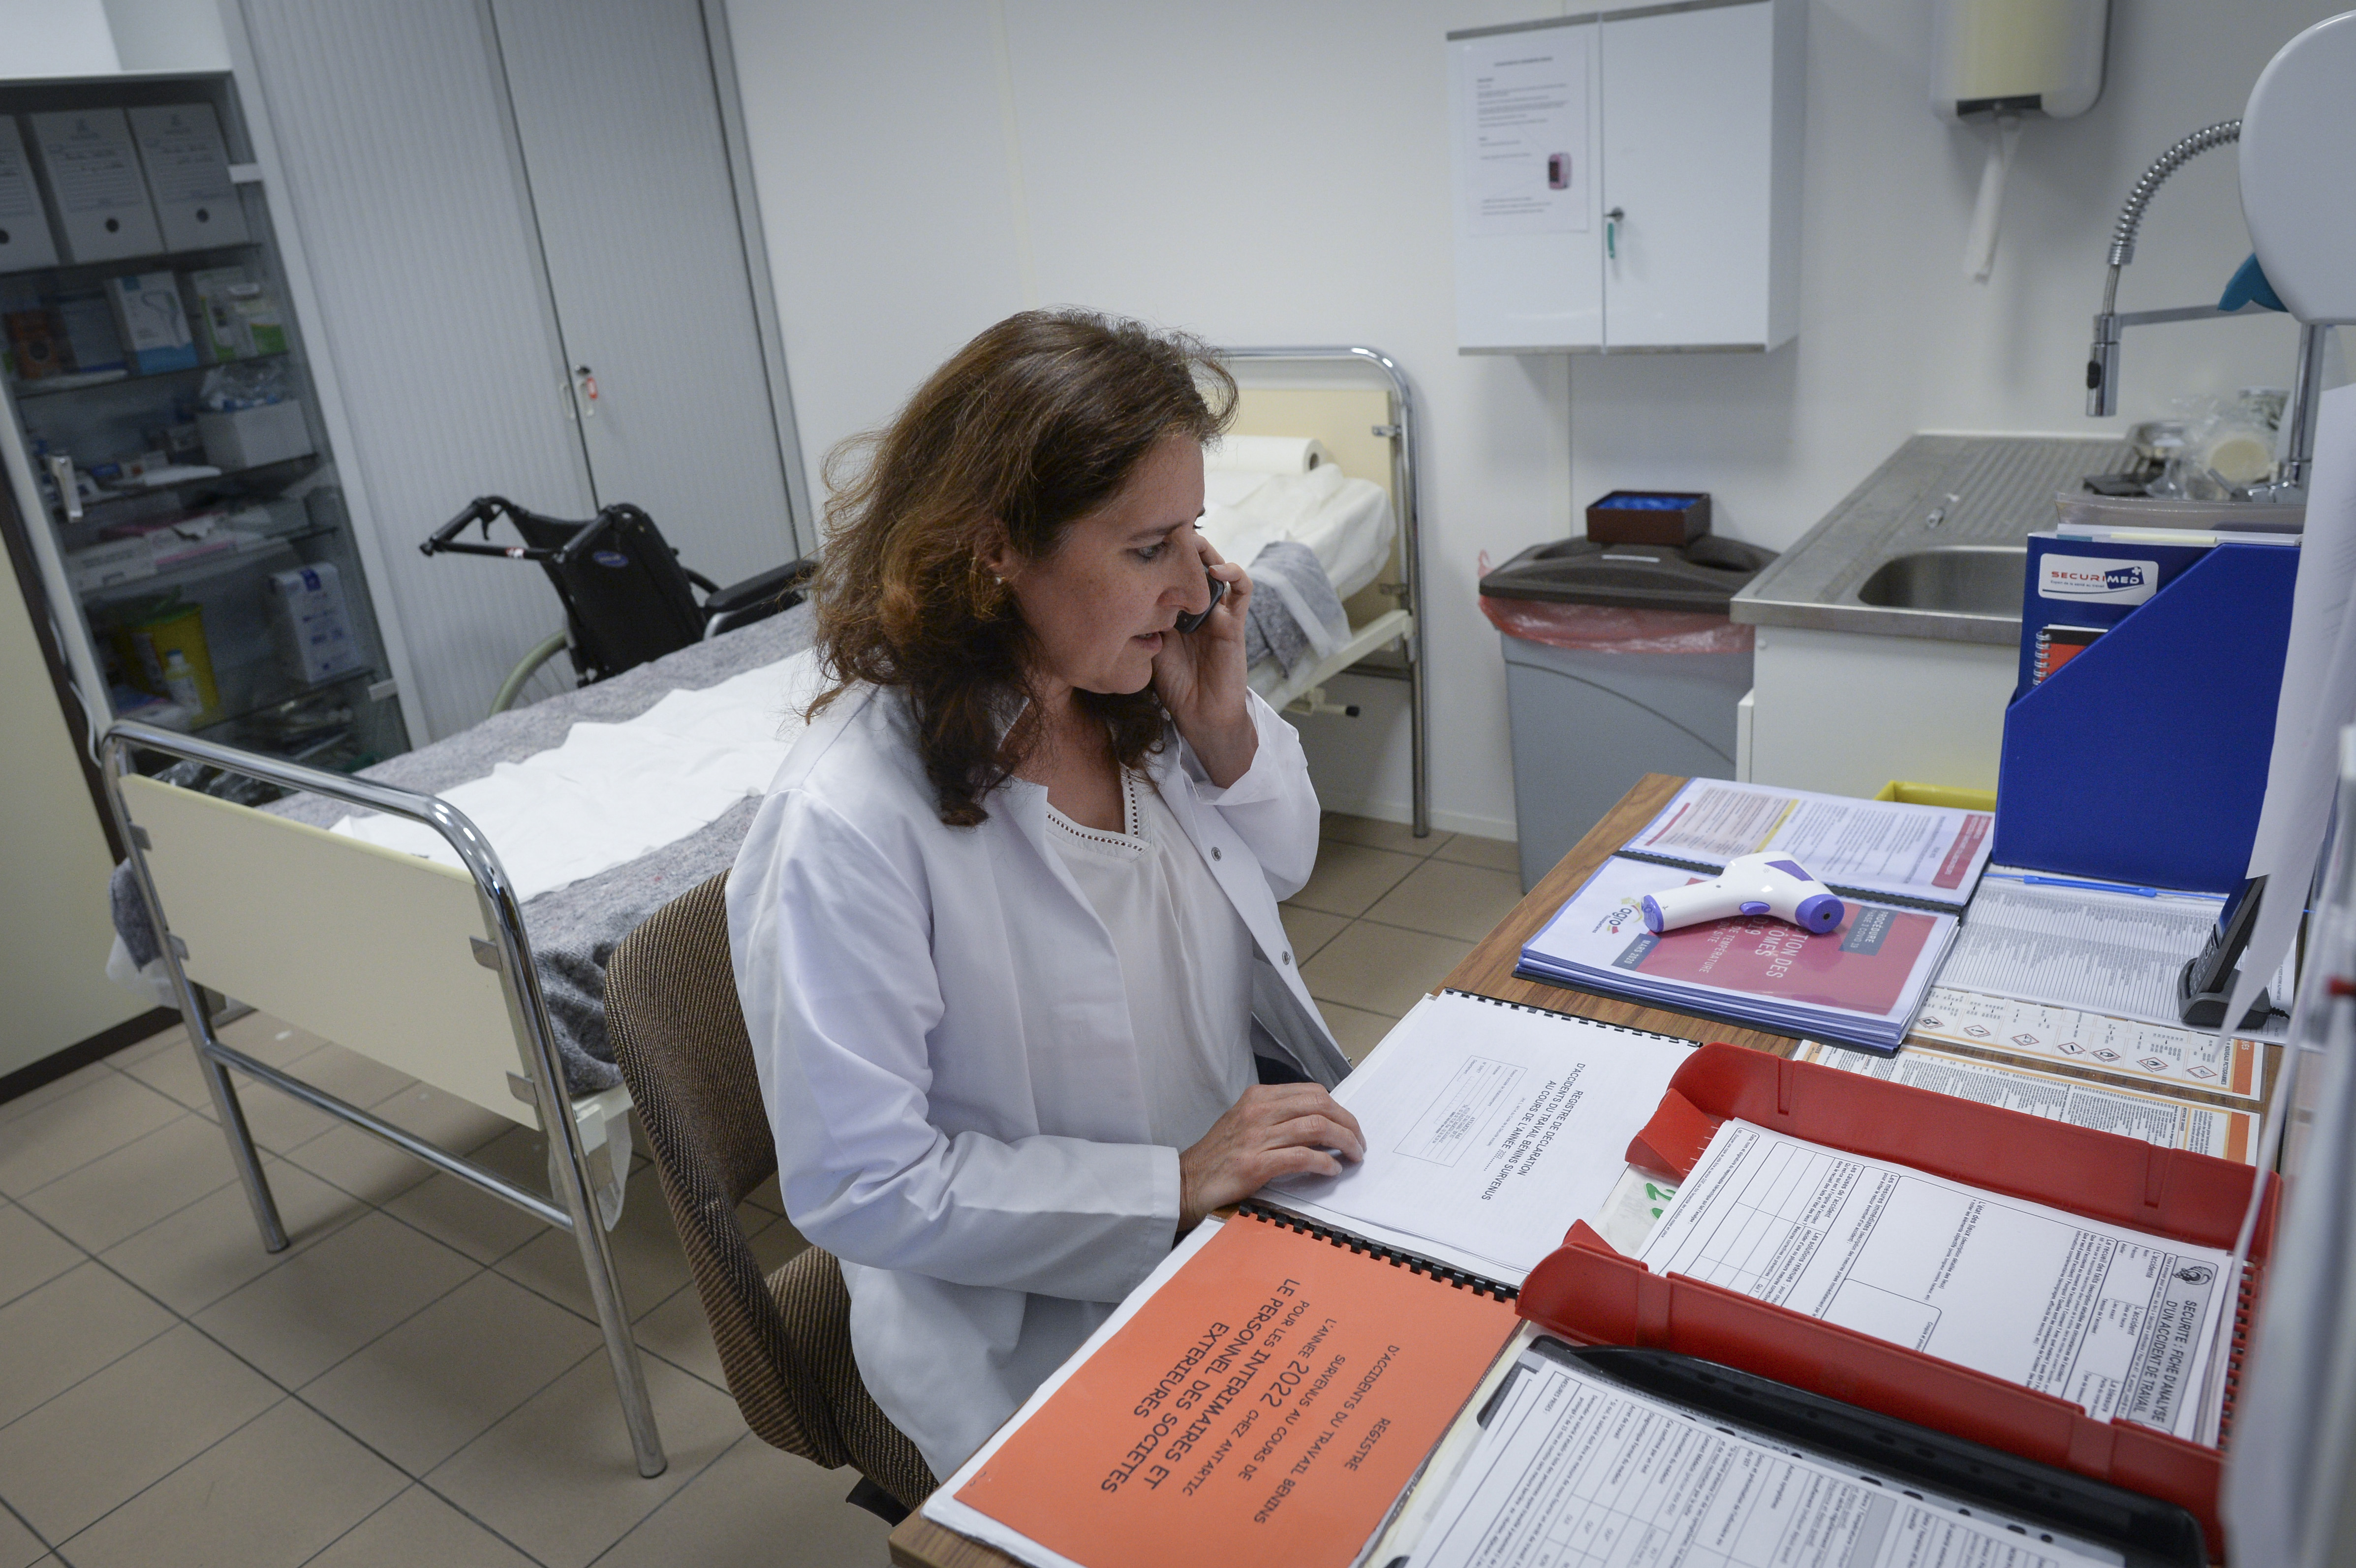 Médecin collaborateur au téléphone dans un service de prévention et de santé au travail